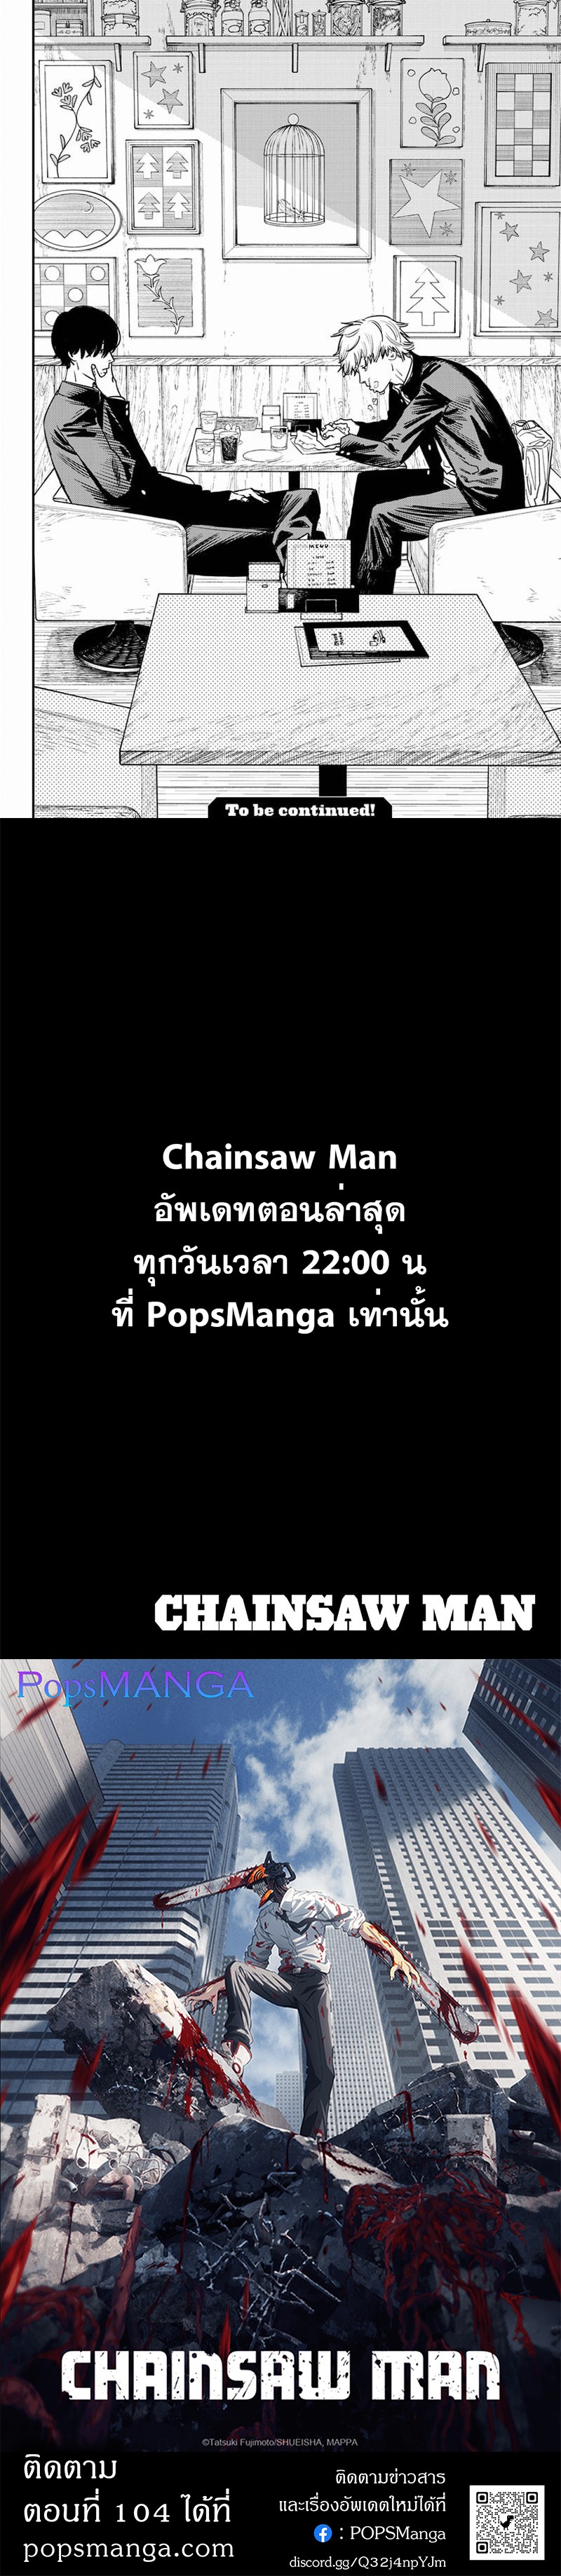 Chainsaw Man 103 (6)